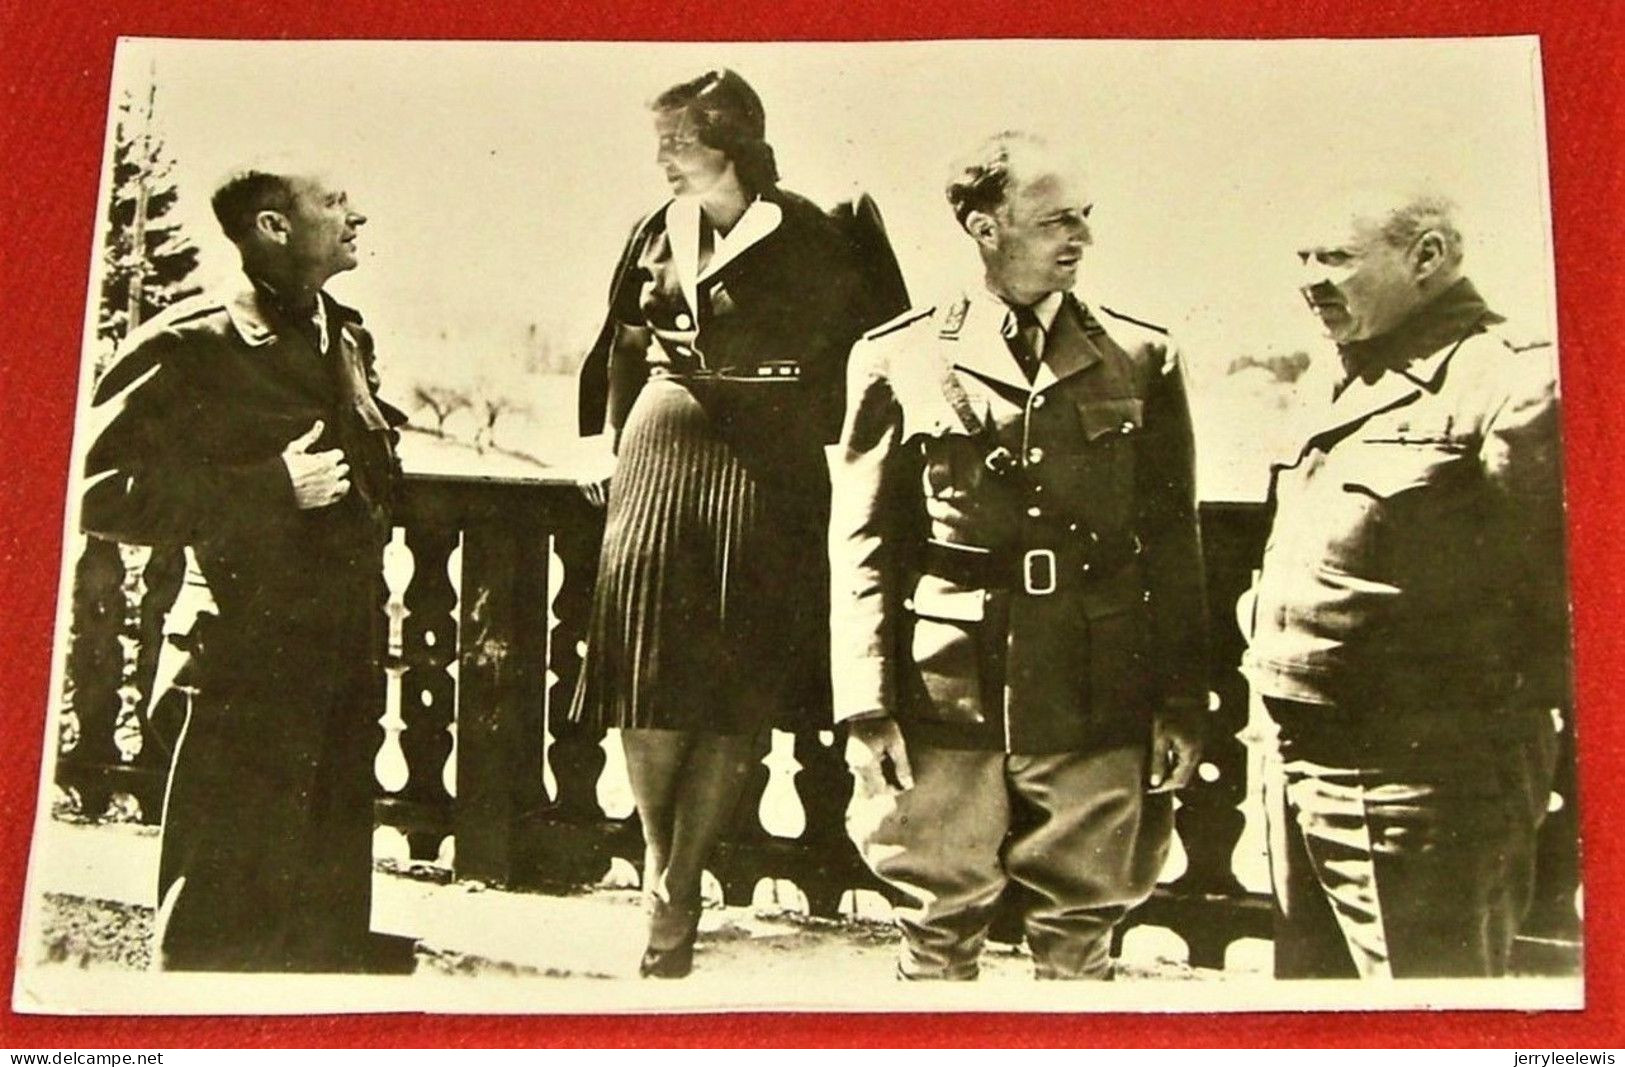 Le Roi Léopold III, La Princesse De Réthy Et Les Généraux Patch Et Haislip, Le 13 Mai 1945 à Strobl (Autriche) - Familles Royales